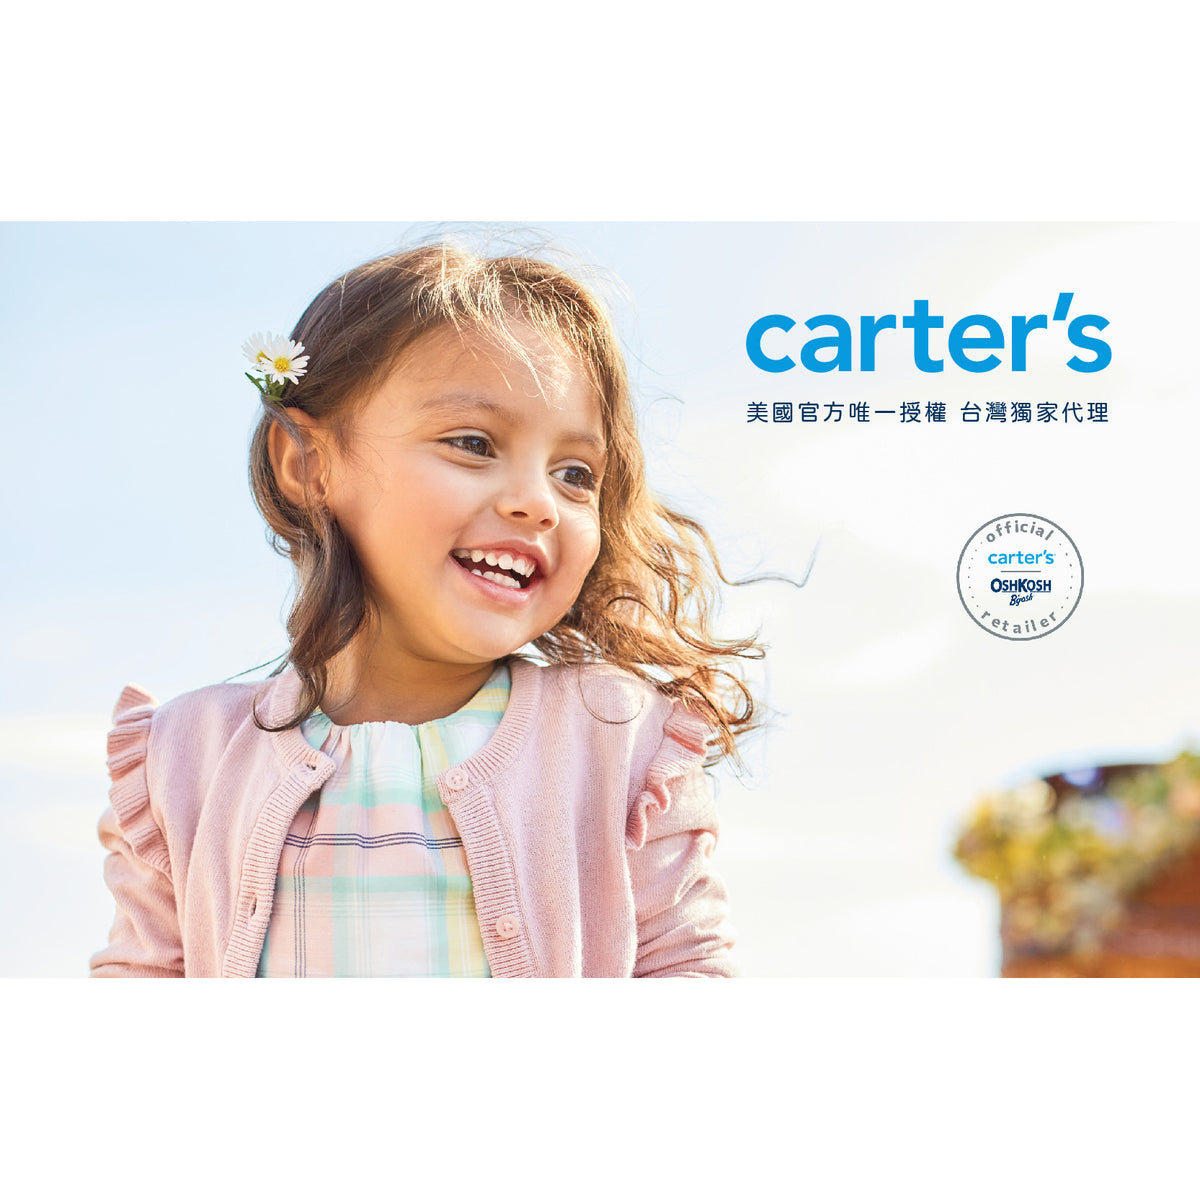 Carter's 水藍色可愛少女上衣(2T-5T)